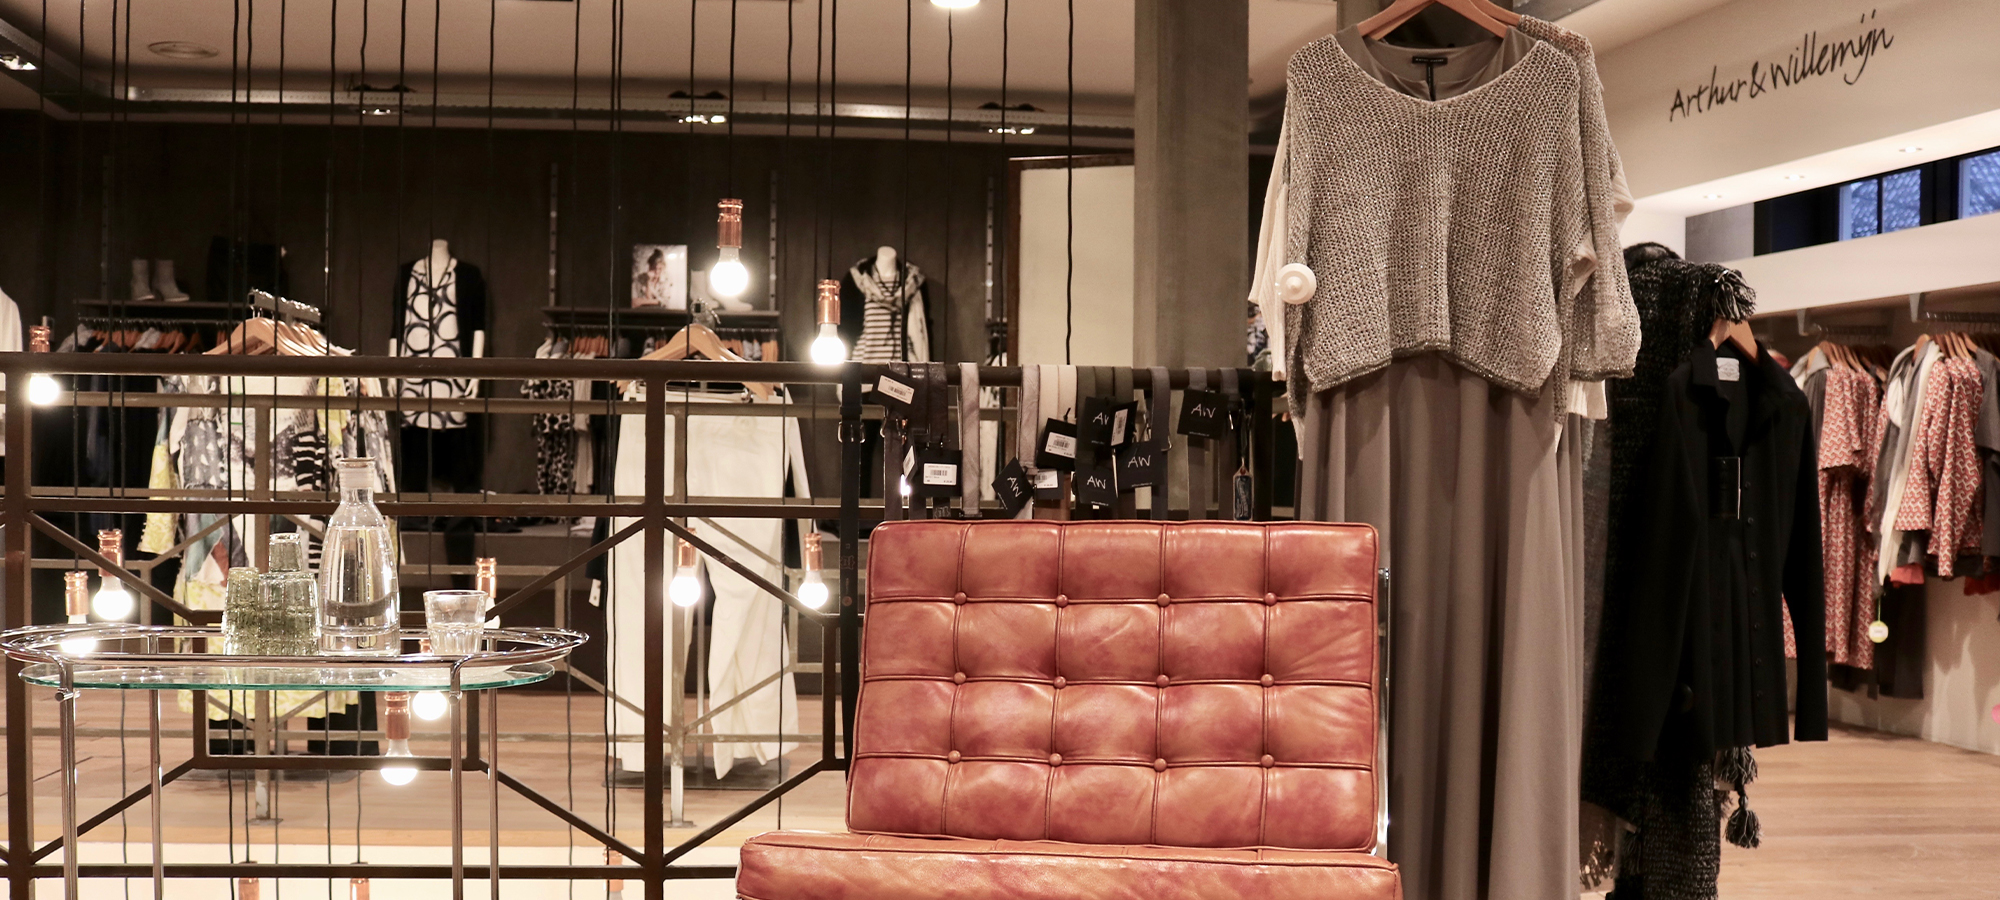 Meet the Buyers at Modefabriek: Arthur & Willemijn